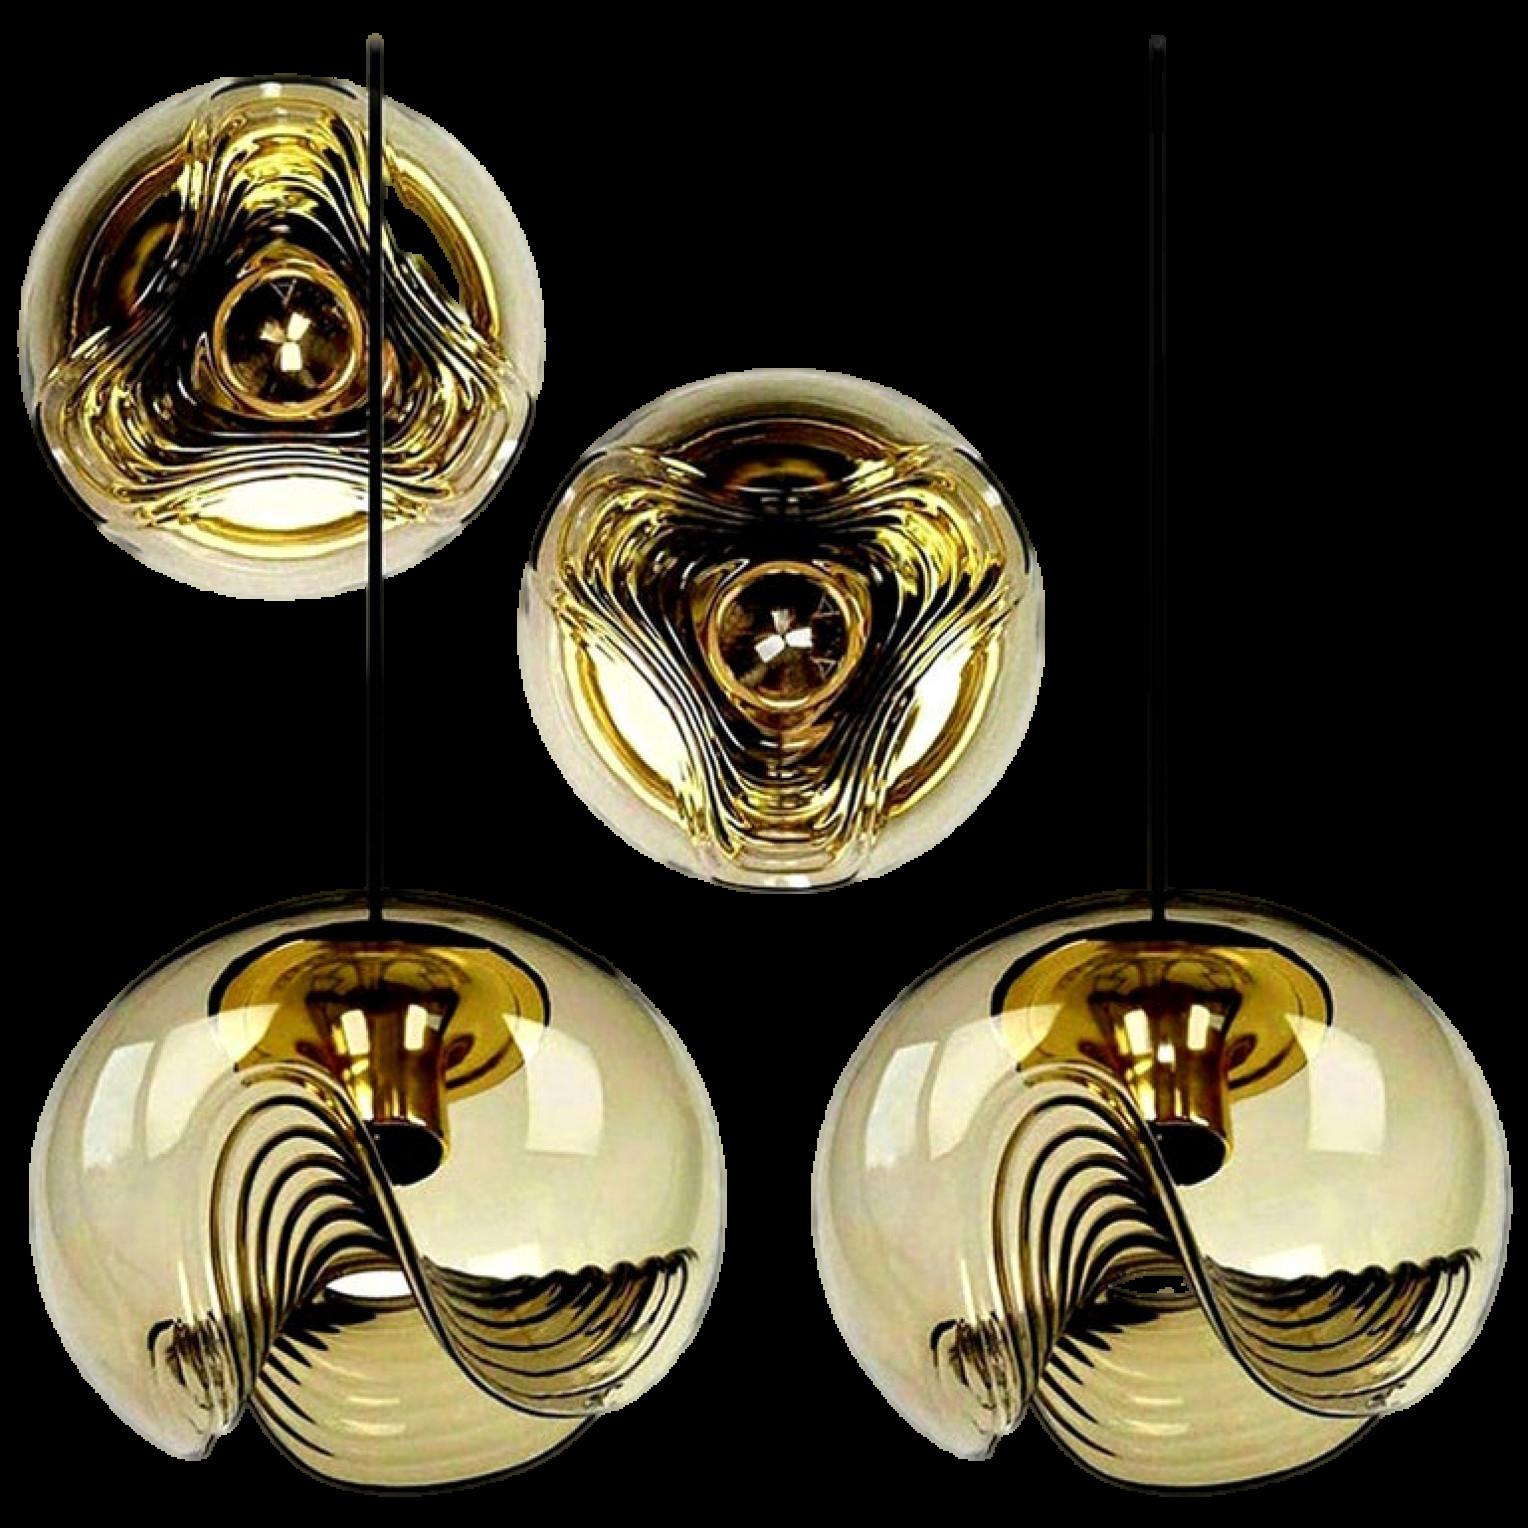 Eine besondere Serie von runden, biomorphen Rauchglasleuchten, entworfen von Koch & Lowy für Peill & Putzler, hergestellt in Deutschland, um 1970. Diese Vintage-Wandleuchten von Peill & Putzler werden schnell zu Design-Klassikern.

Das geblasene